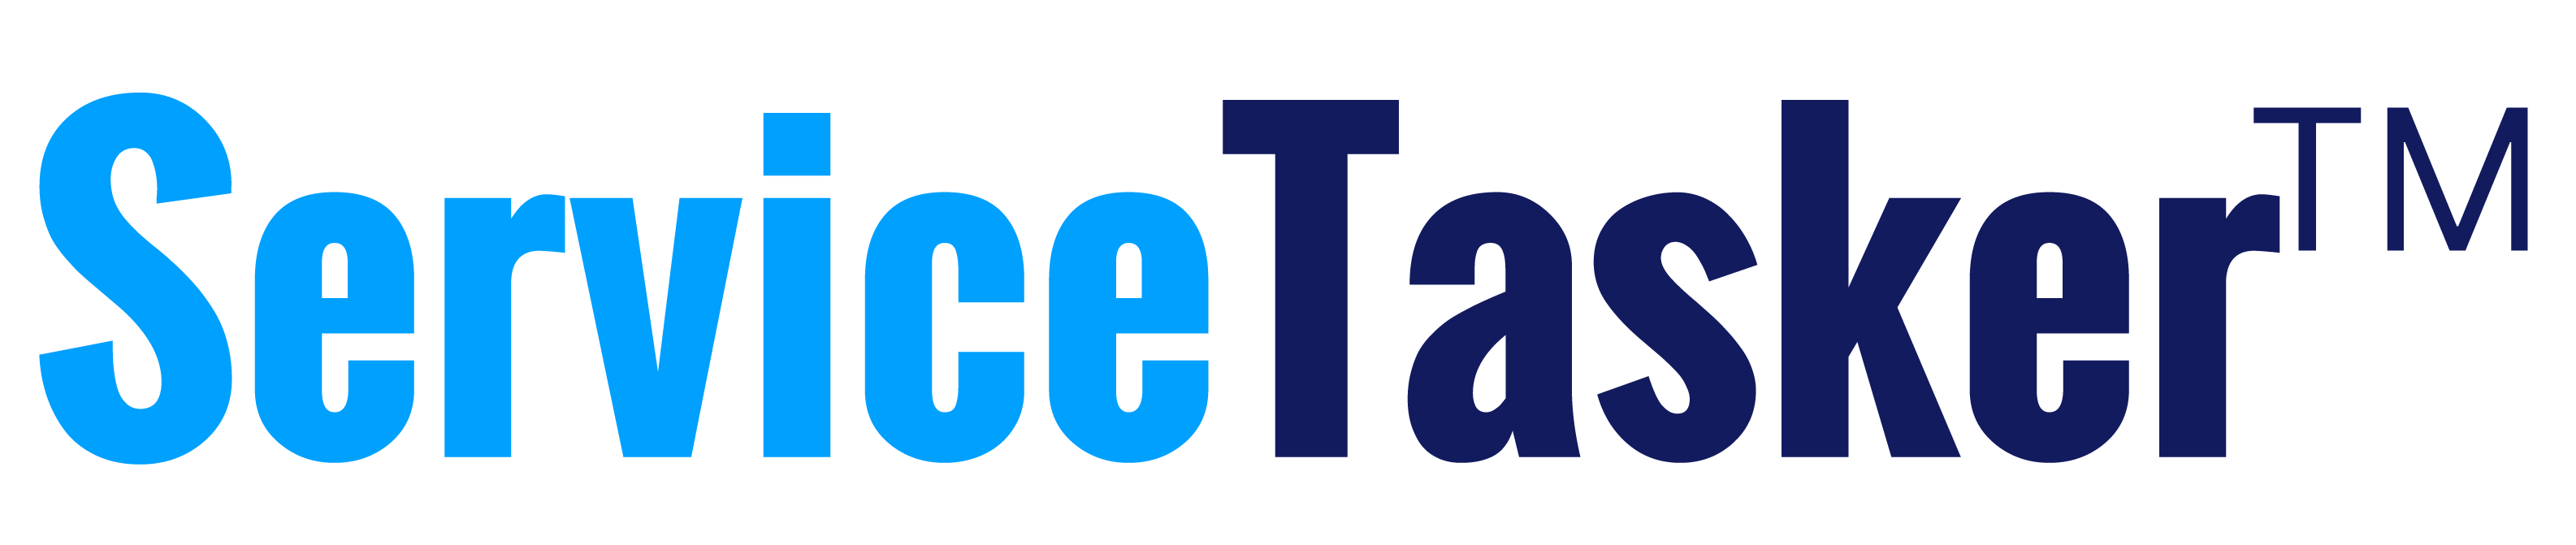 servicetasker-logo